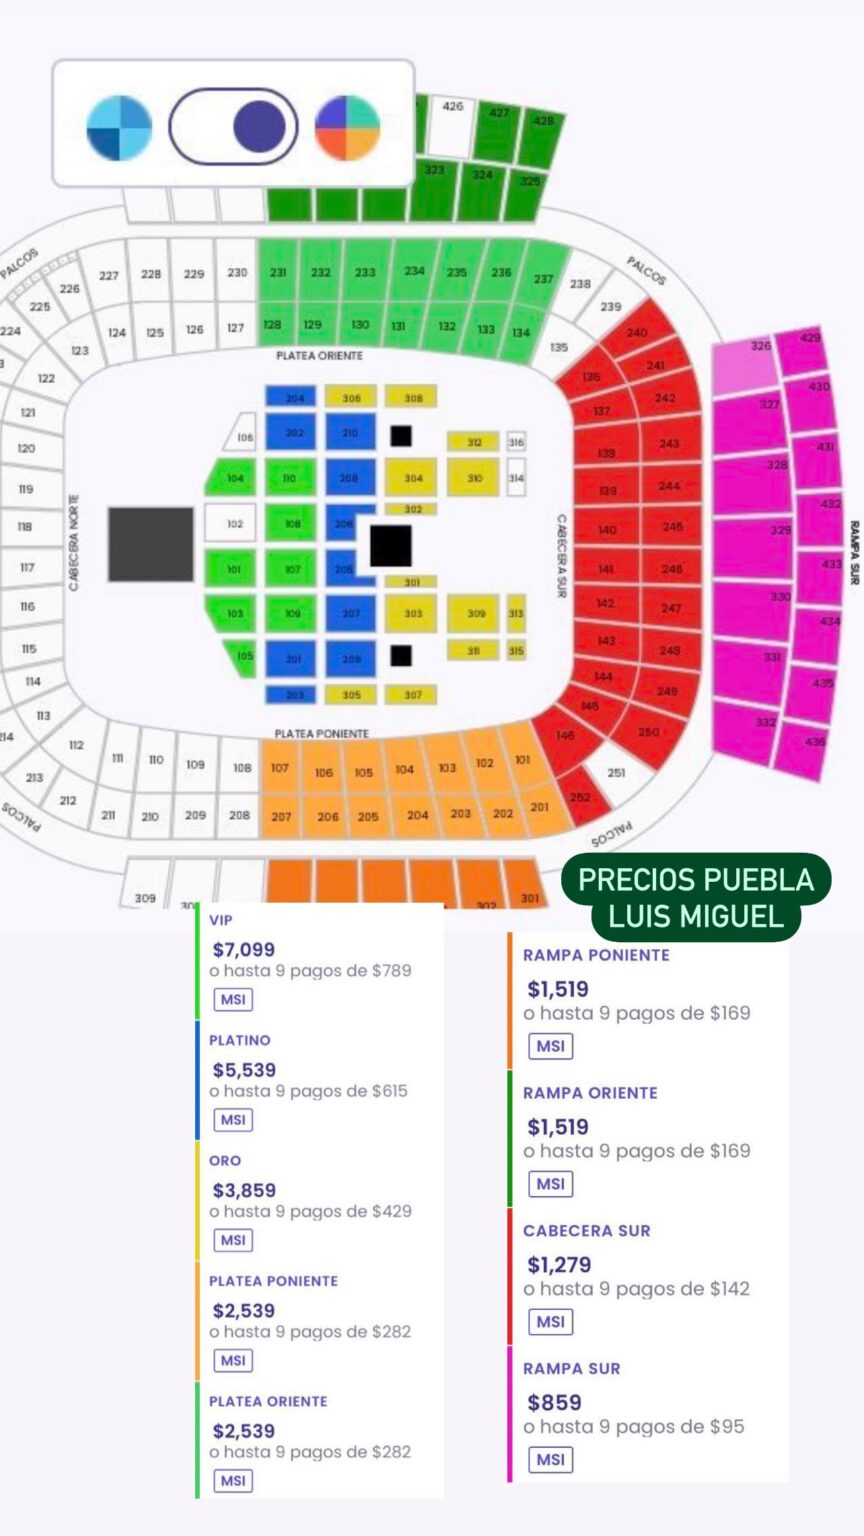 Estos son los precios de preventa de boletos para concierto de Luis